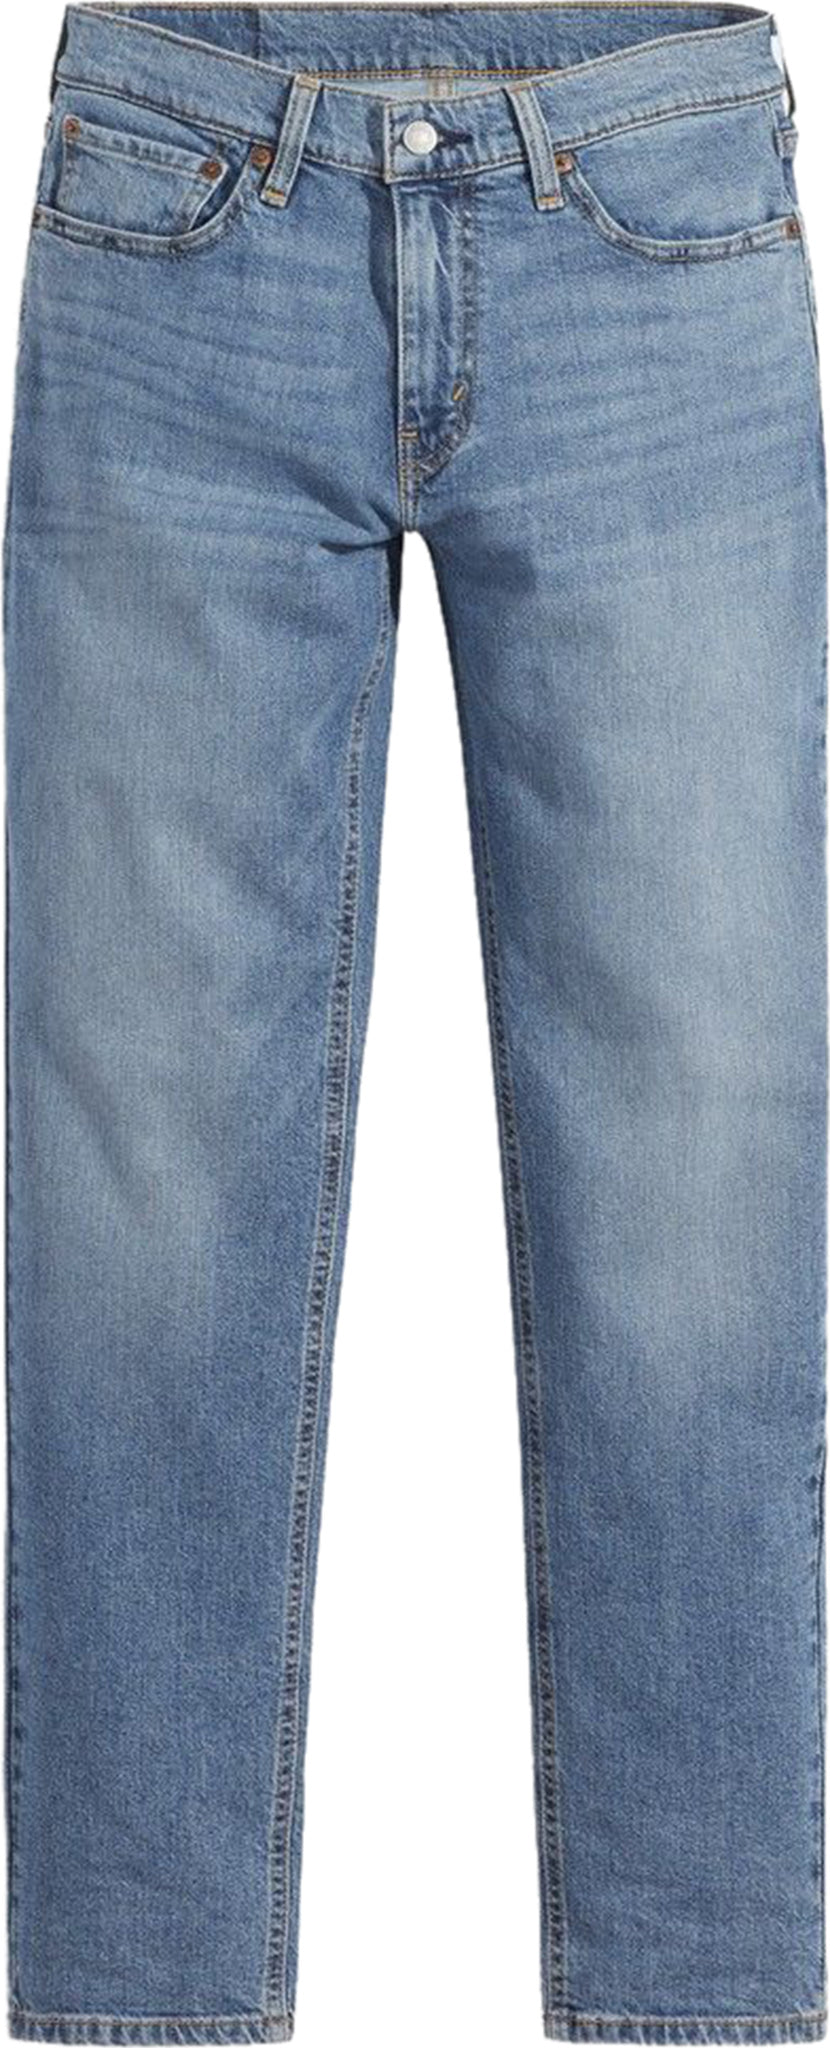 Levi's 531 Athletic Slim Fit Jeans - Men's